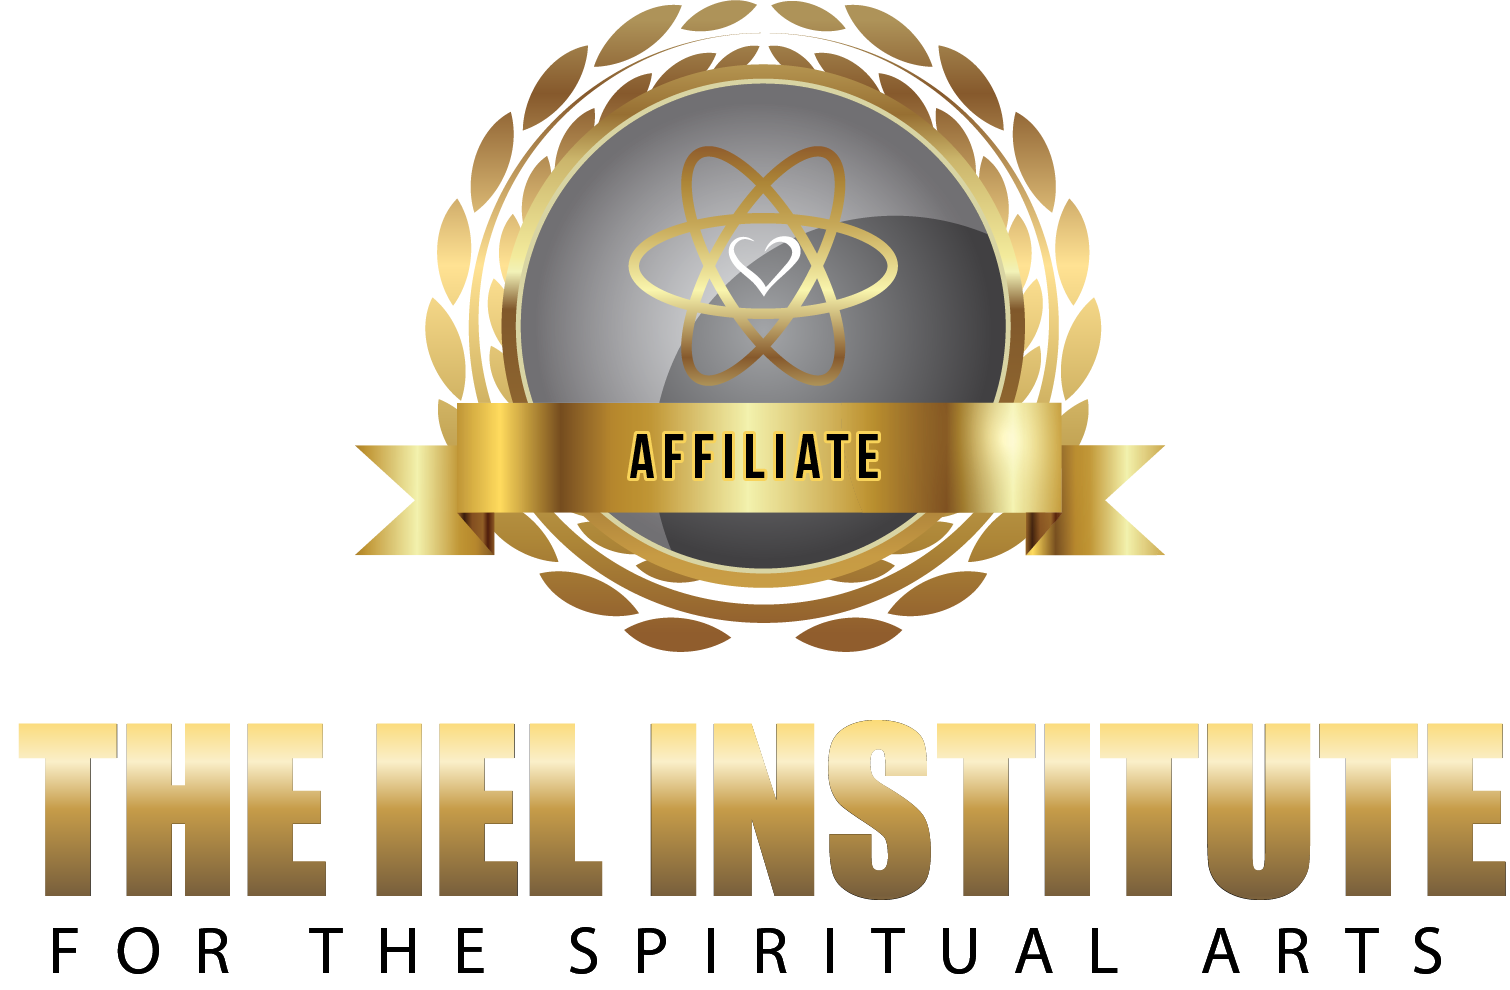 IEL Institute Affiliate